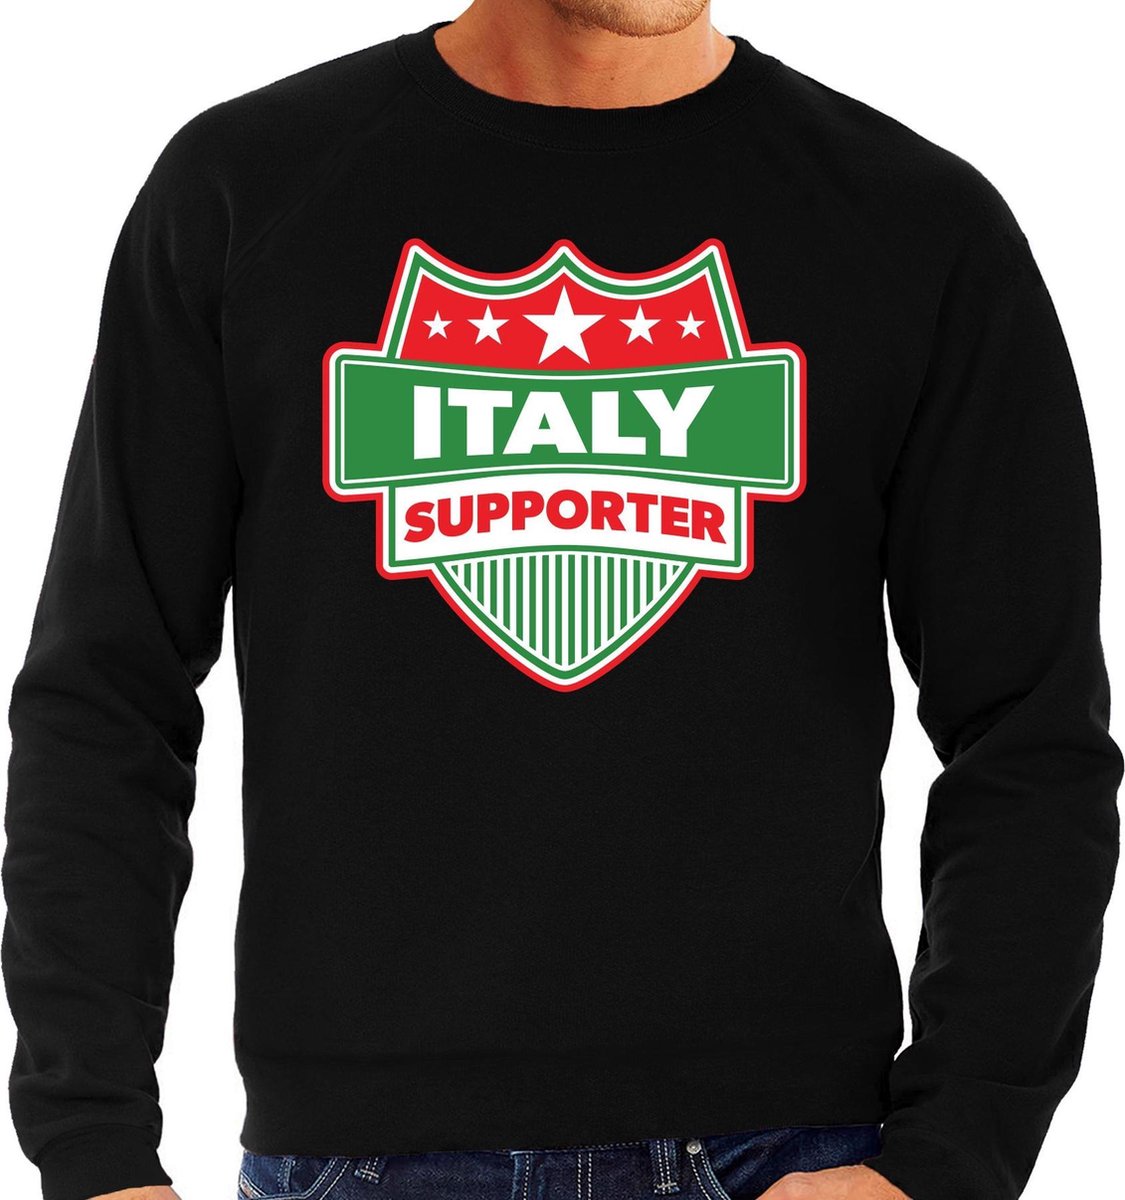 Italy supporter schild sweater zwart voor heren - Italie landen sweater / kleding - EK / WK / Olympische spelen outfit M